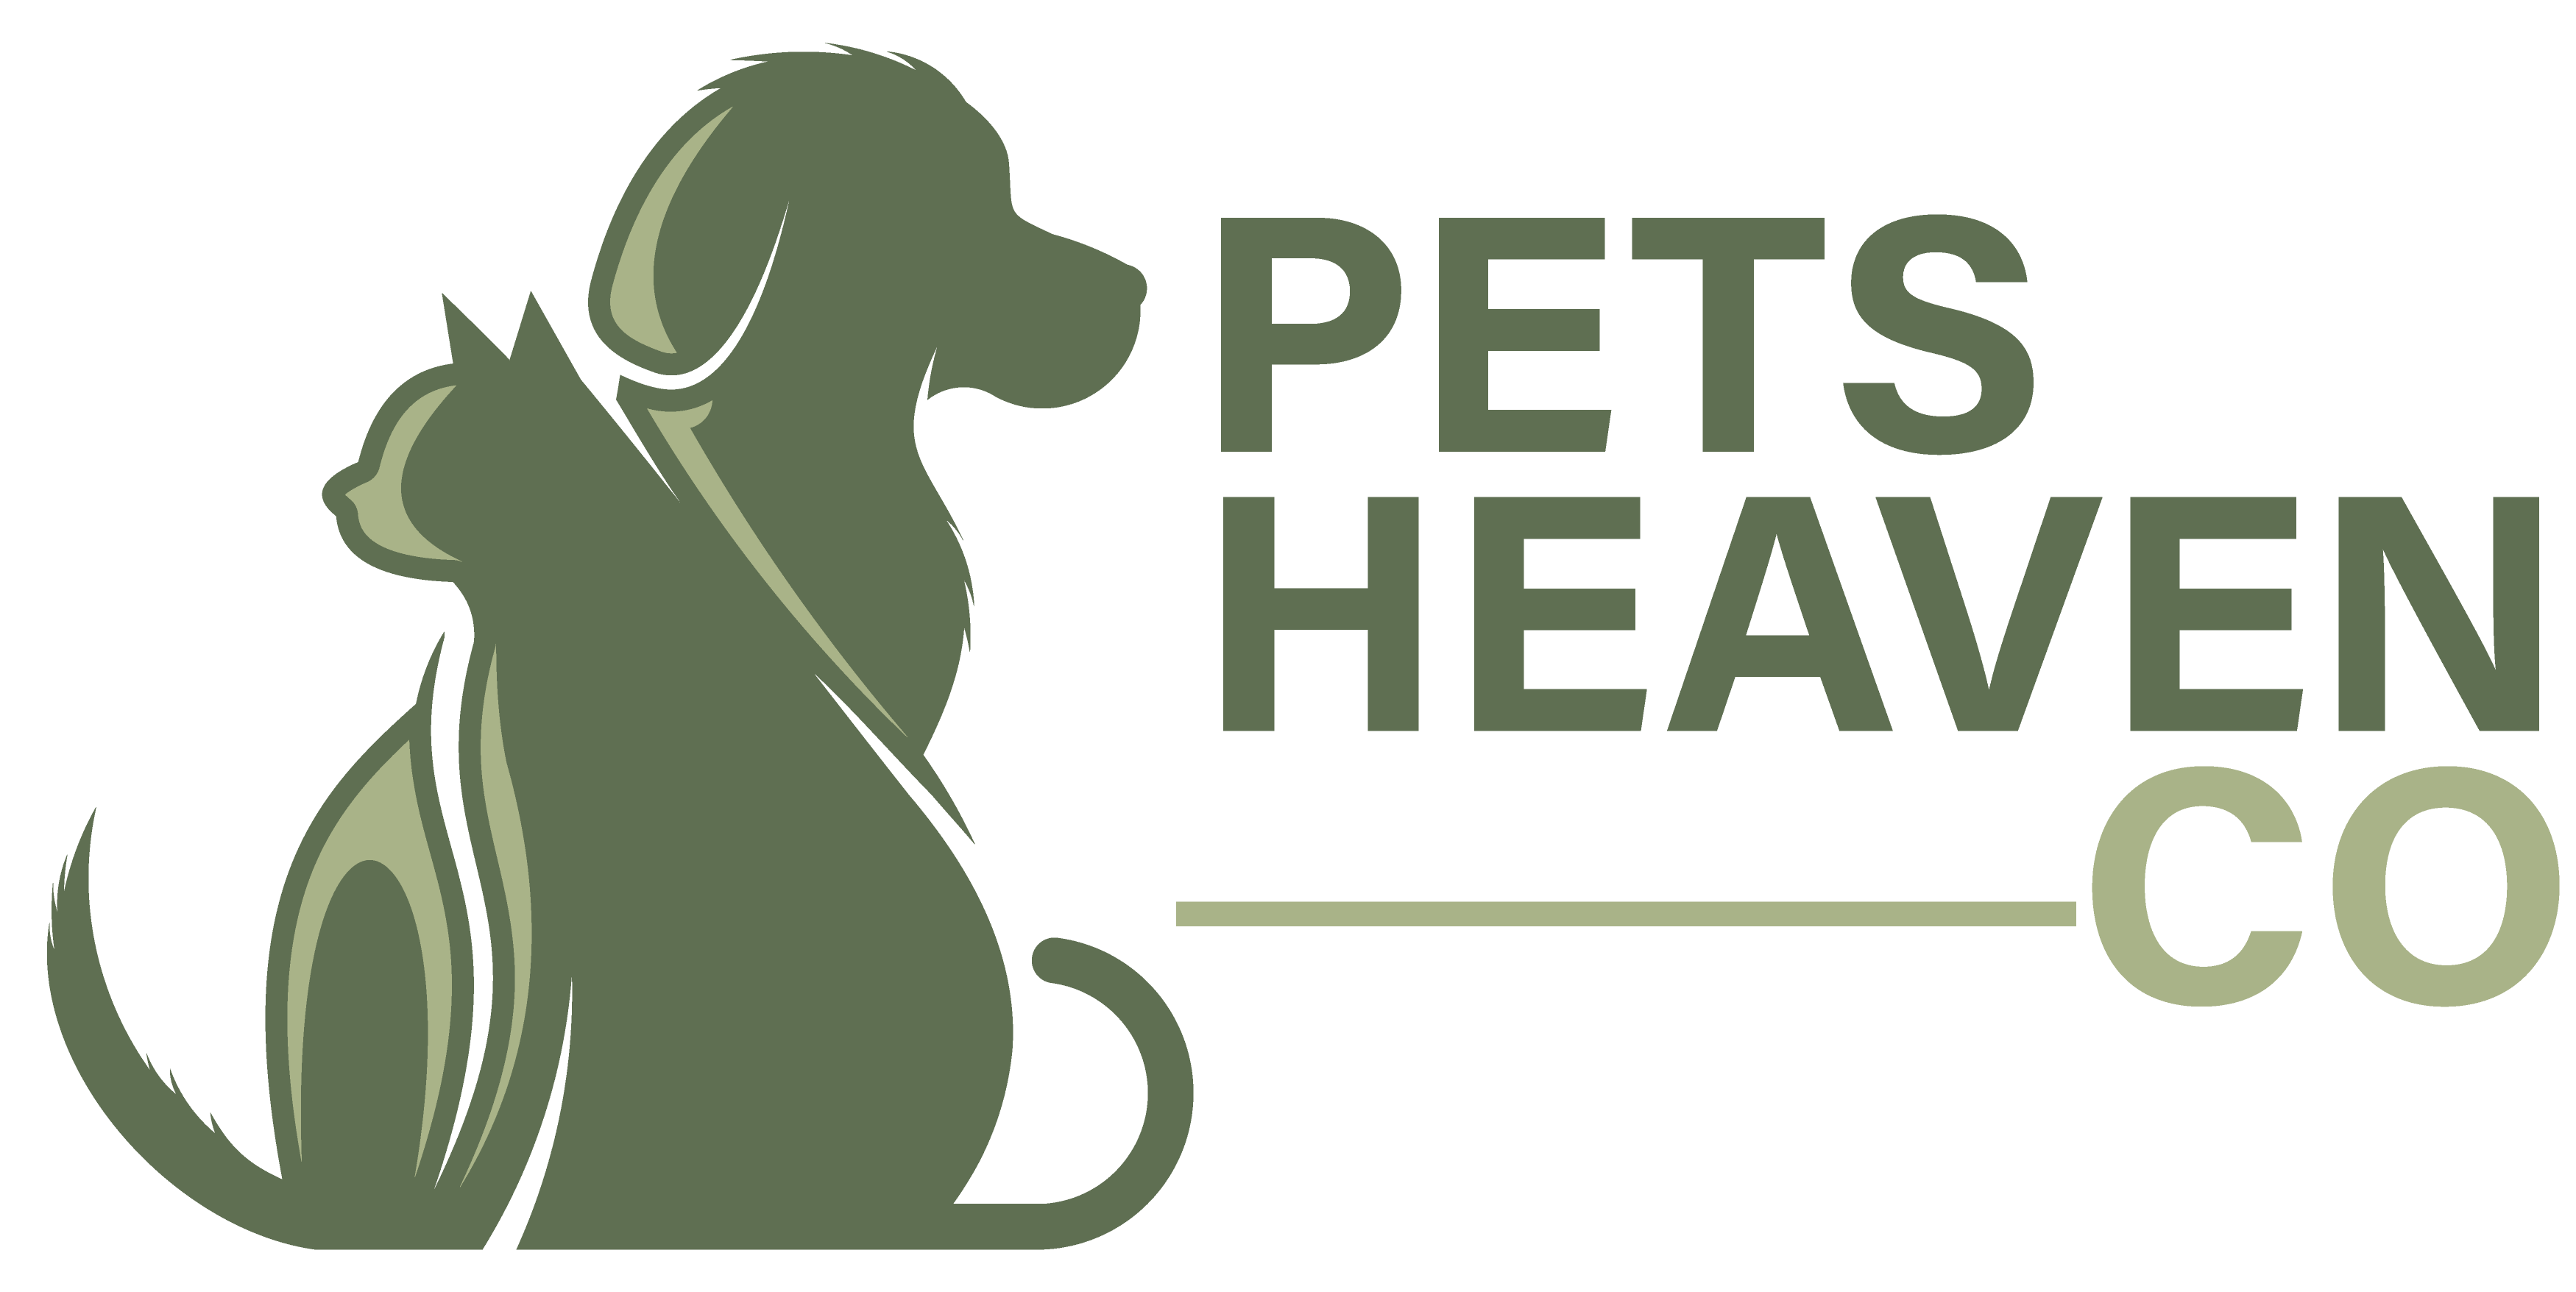 Pets Heaven Co